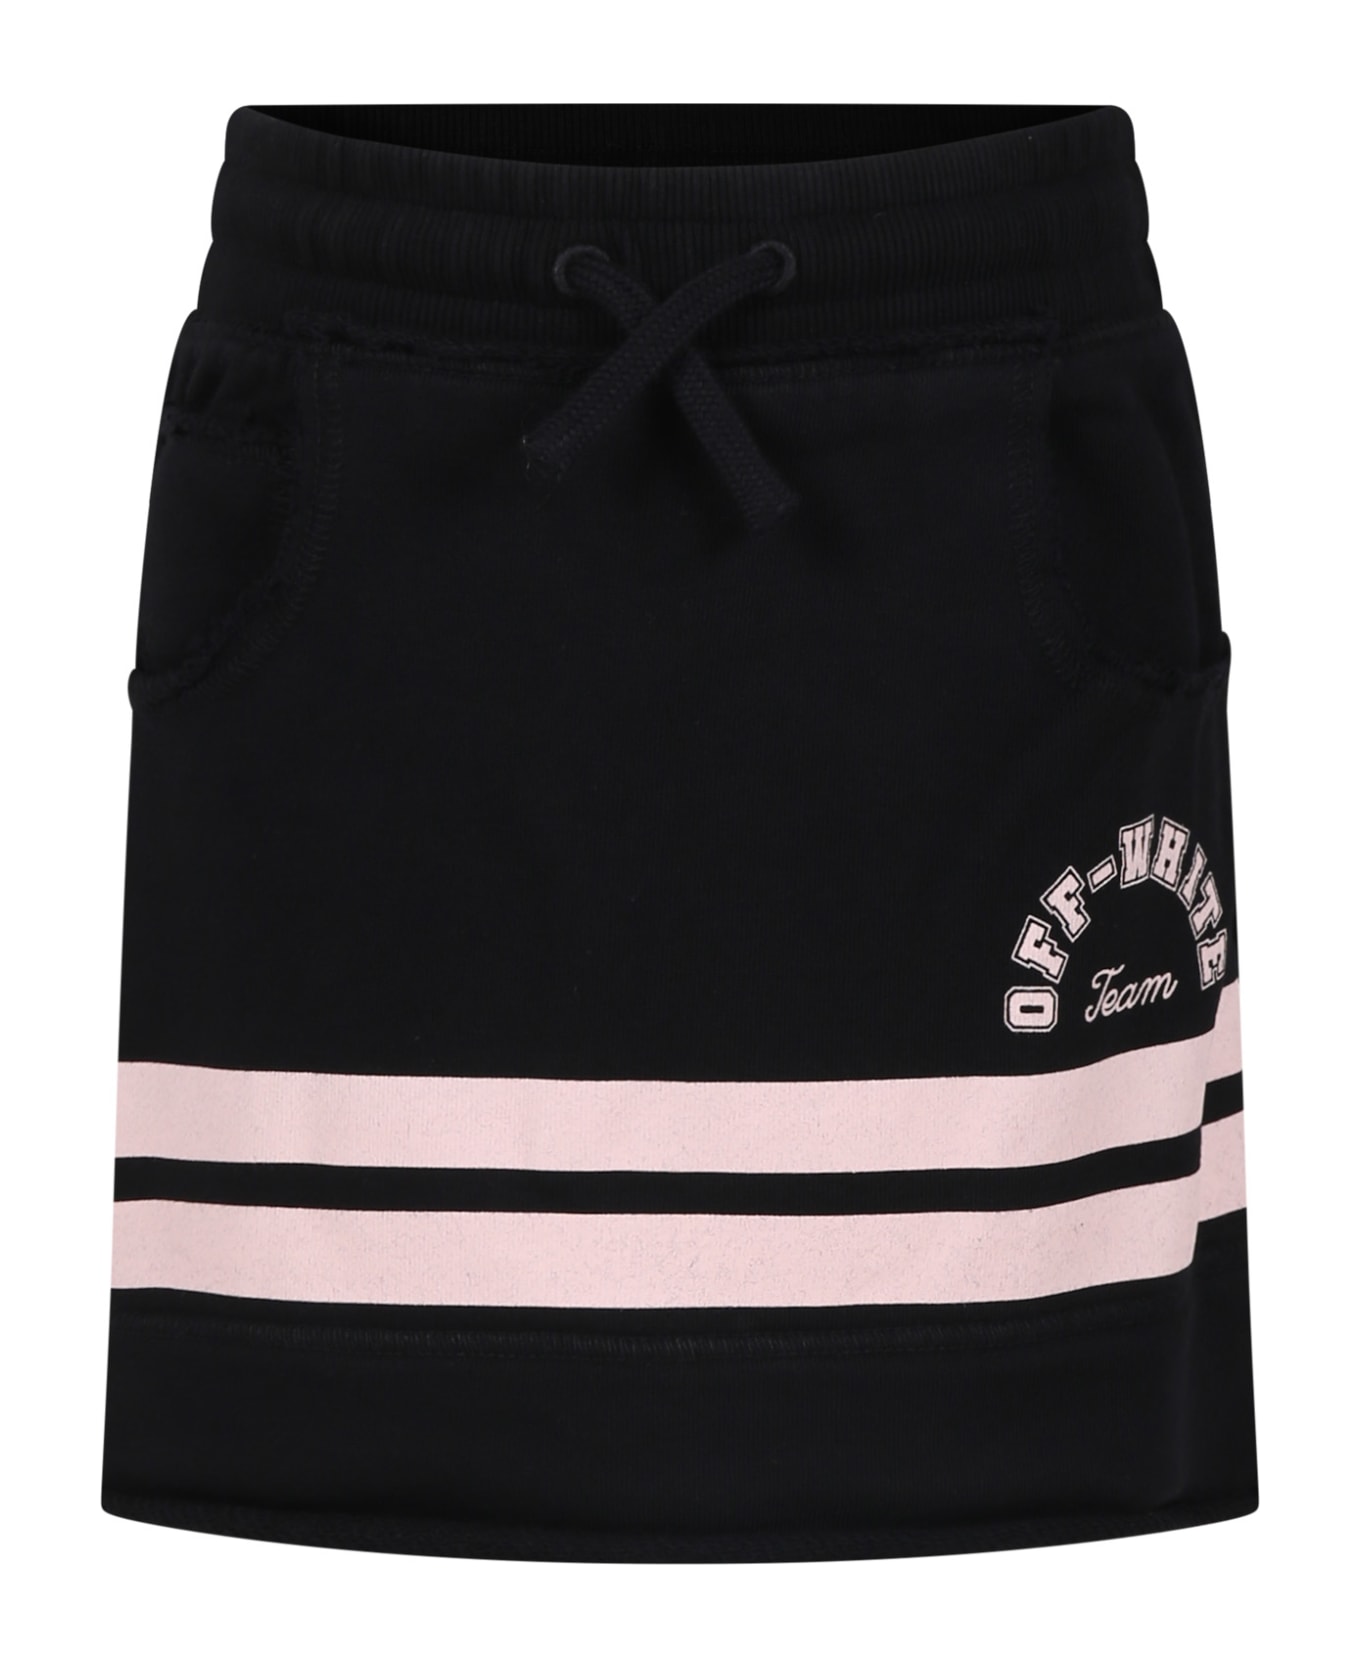 Off-White Black Skirt For Girl With Logo - Black ボトムス